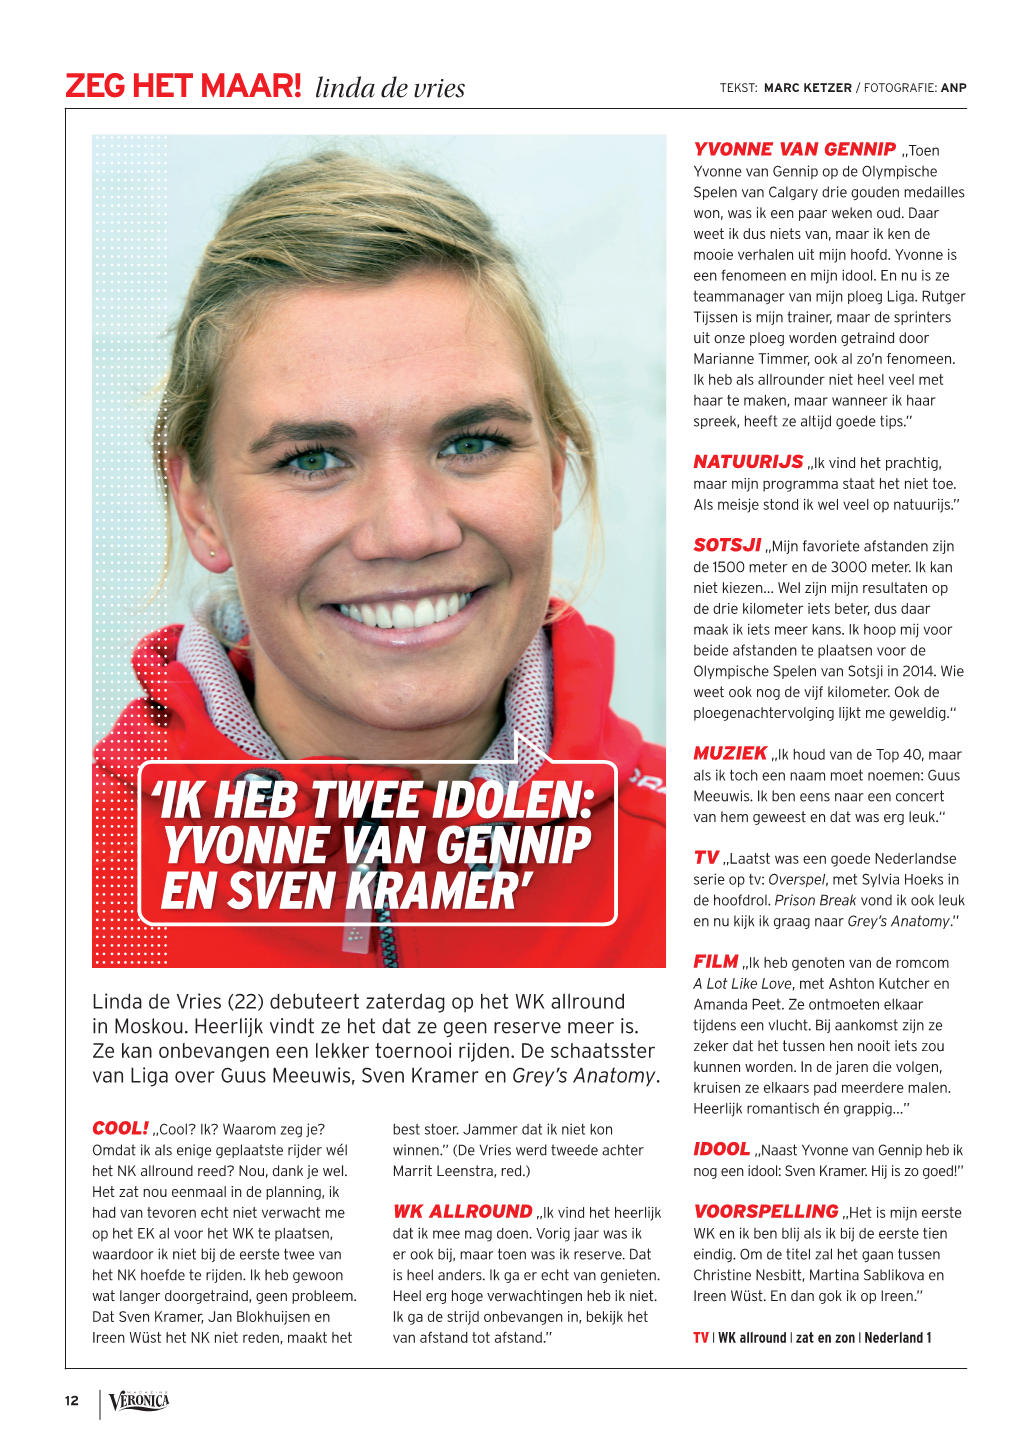 ' Ik Heb Twee Idolen: Yvonne Van Gennip En Sven Kramer'